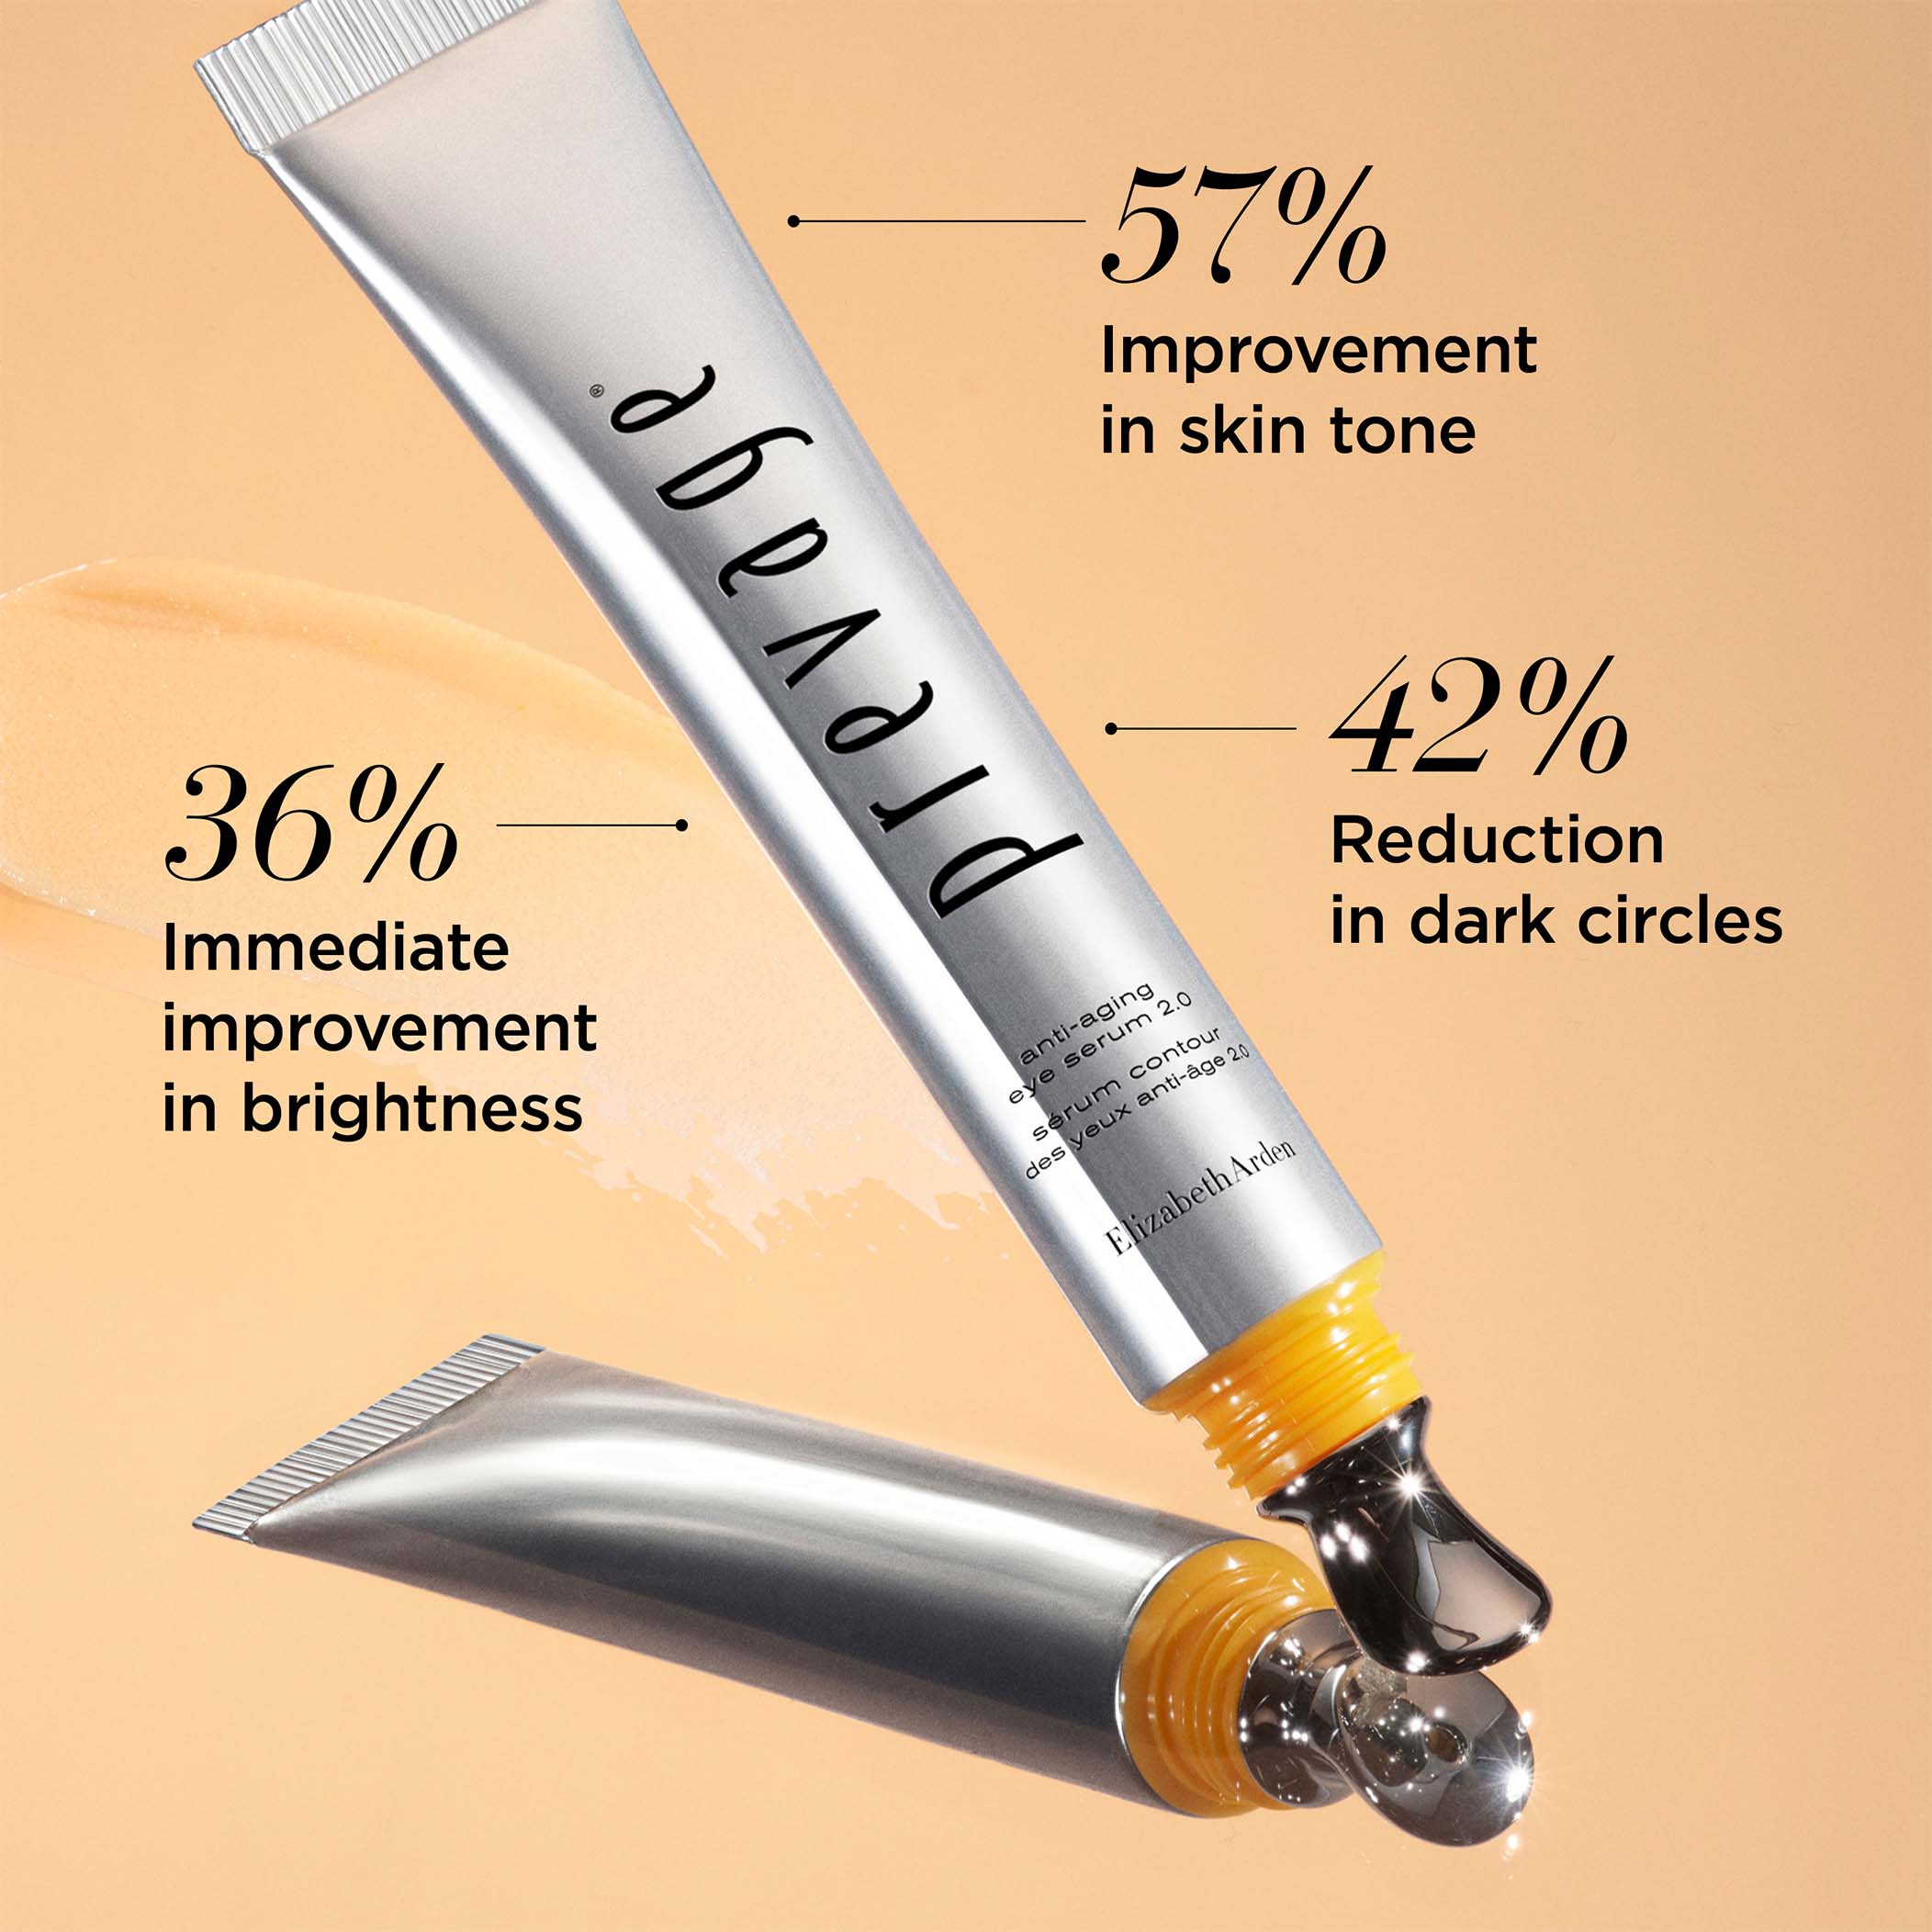 57% improvement in skin tone, 42% reduction in dark circles, 36% immediate improvement in brightness